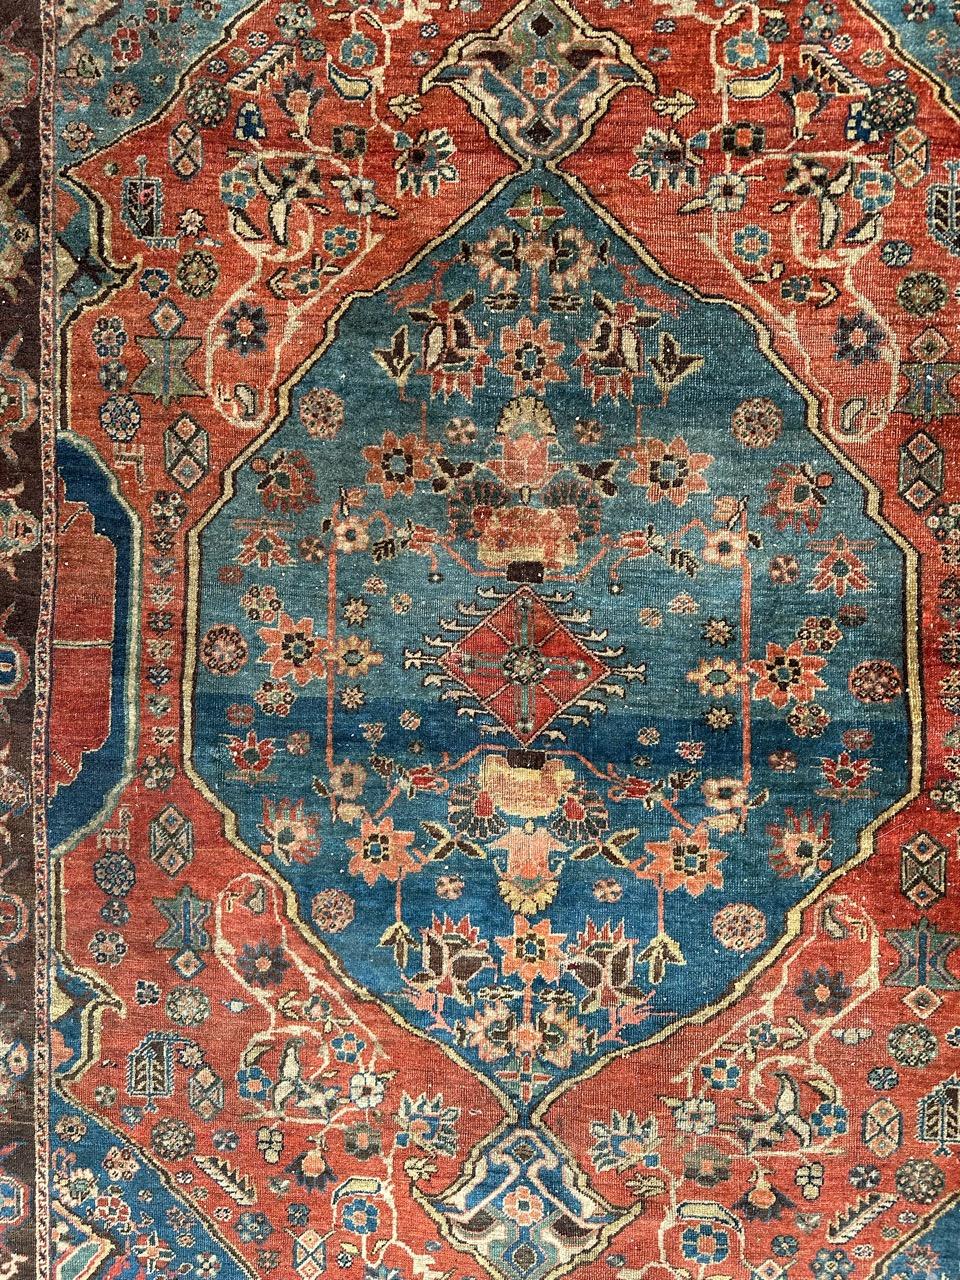 Wunderschöner, sehr feiner Täbriz-Teppich aus dem späten 19. Jahrhundert mit schönem Dekorations- und Stammesmuster mit stilisierten Blumen und Motiven und schönen natürlichen Farben mit Koralle und Himmelblau und Grün, Beige und Braun. Vollständig